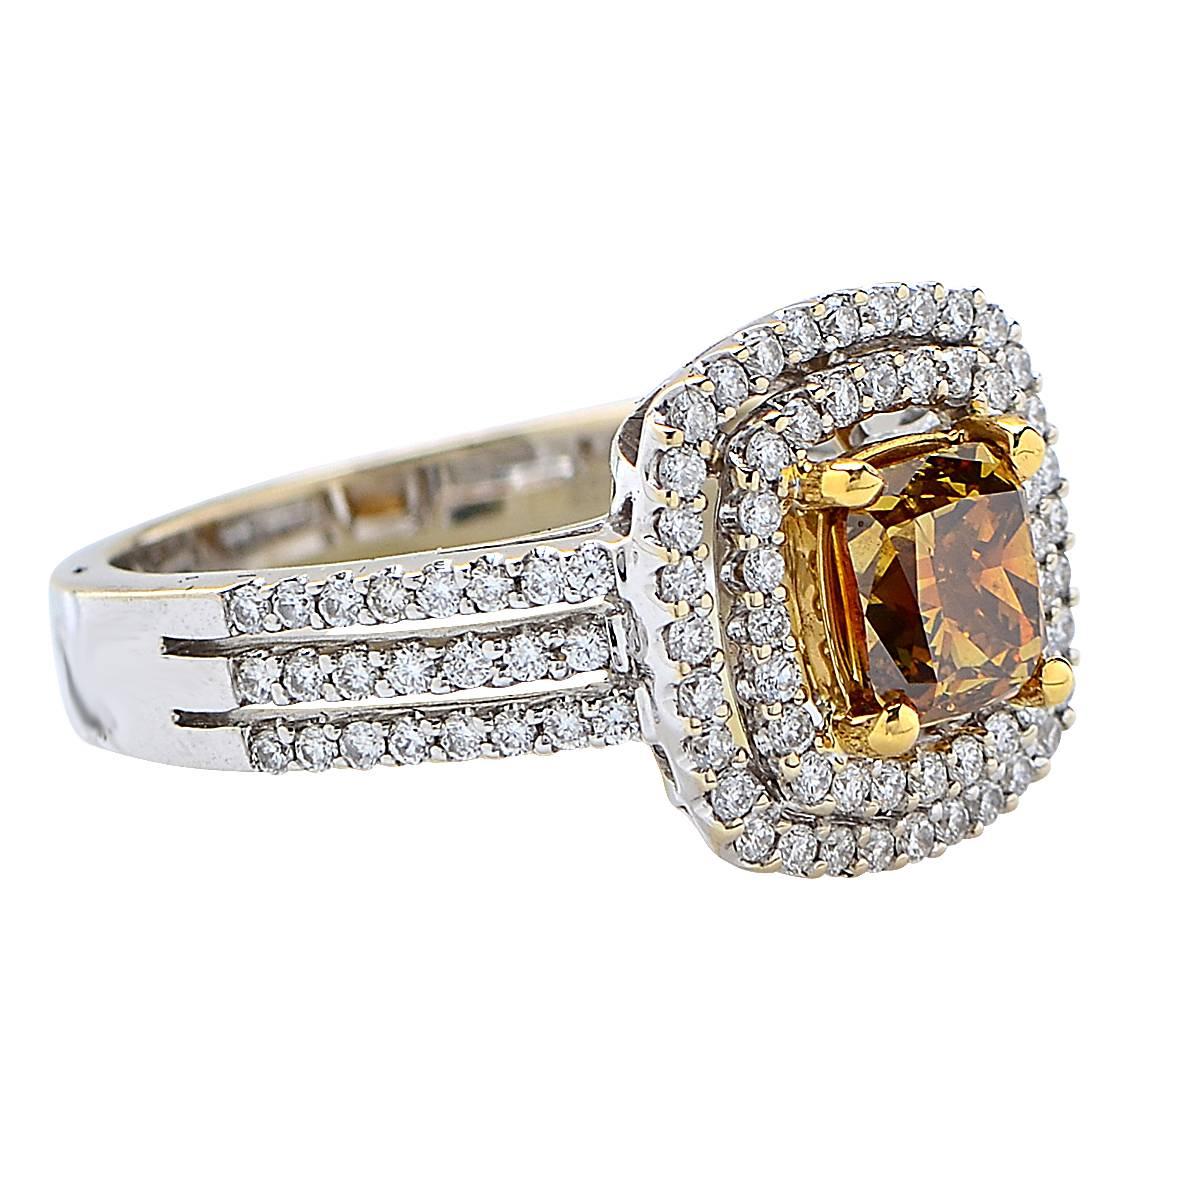 Atemberaubender Verlobungsring aus 18 Karat Gelb- und Weißgold mit einem GIA-zertifizierten, tief bräunlich-gelben Diamanten im Strahlenschliff mit einem Gewicht von 1,23 Karat, der von 102 runden Diamanten im Brillantschliff mit einem Gesamtgewicht